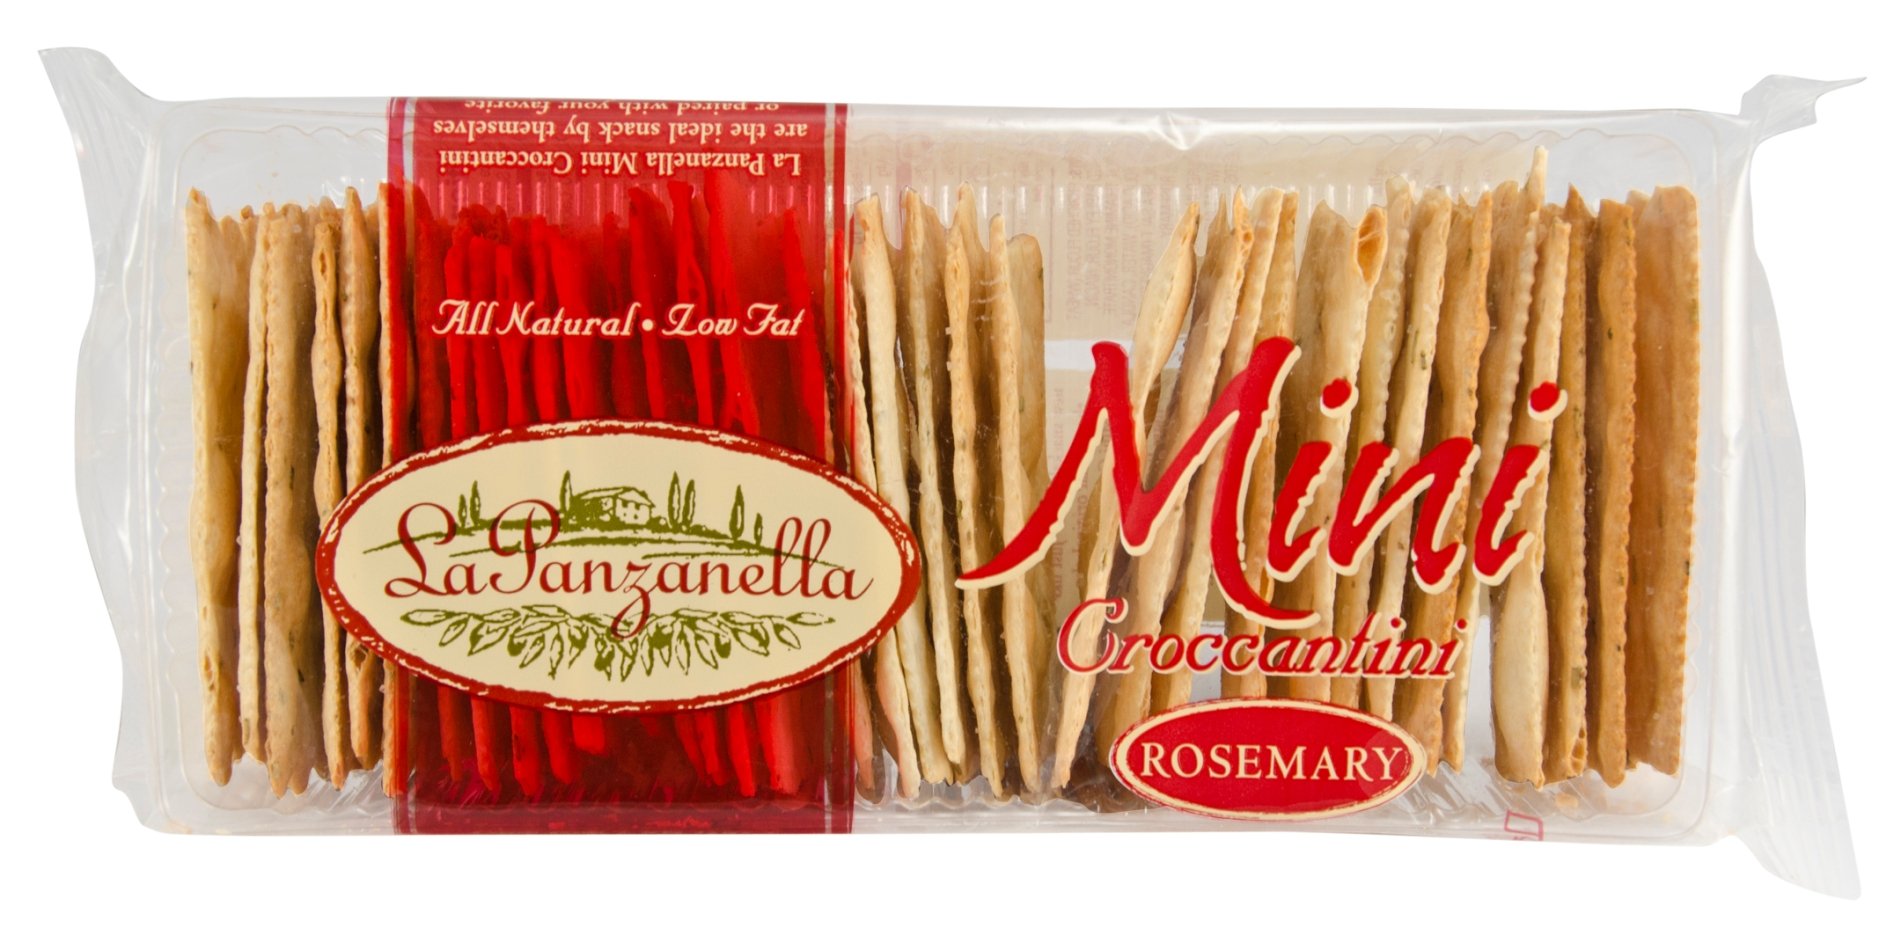 La Panzanella Rosemary Mini Croccantini 6oz 12ct